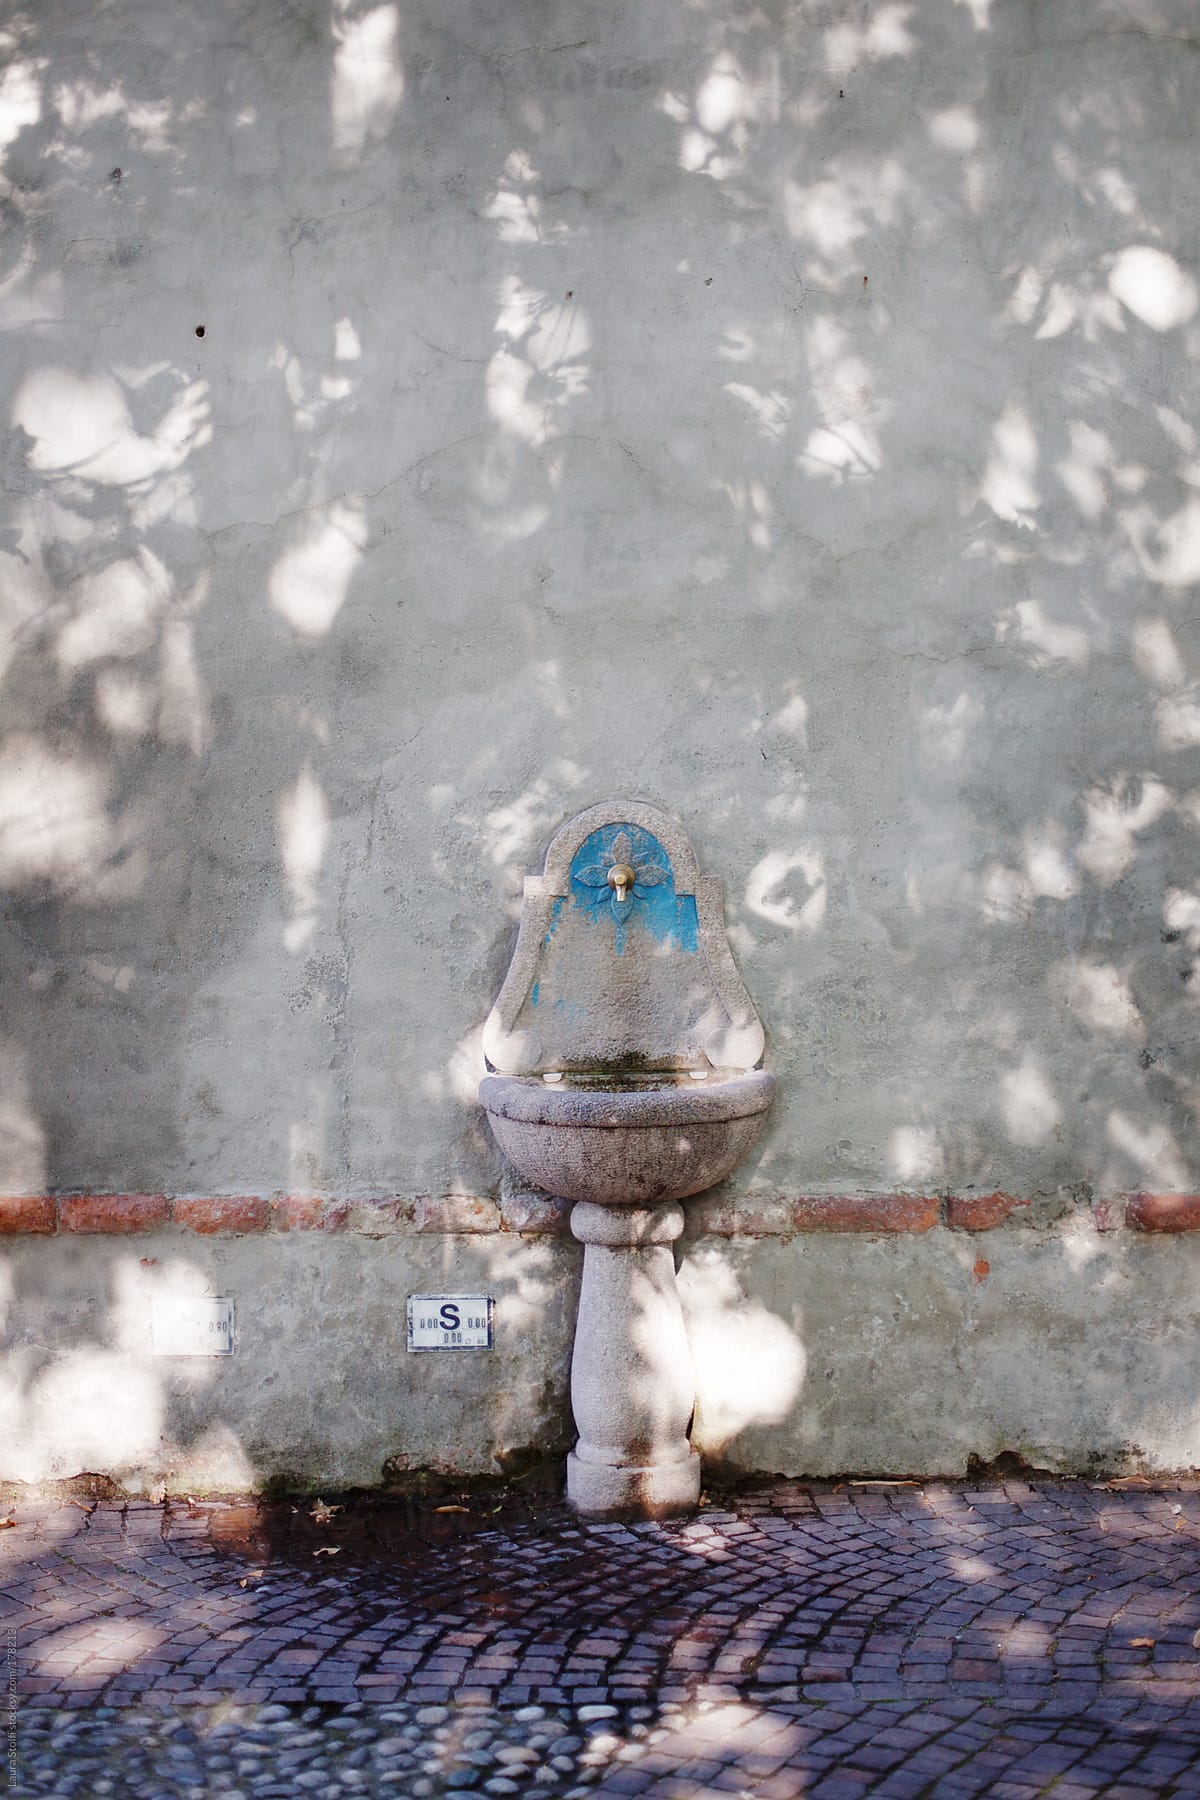 Stone  ancient drinking fountain in italian narrow street